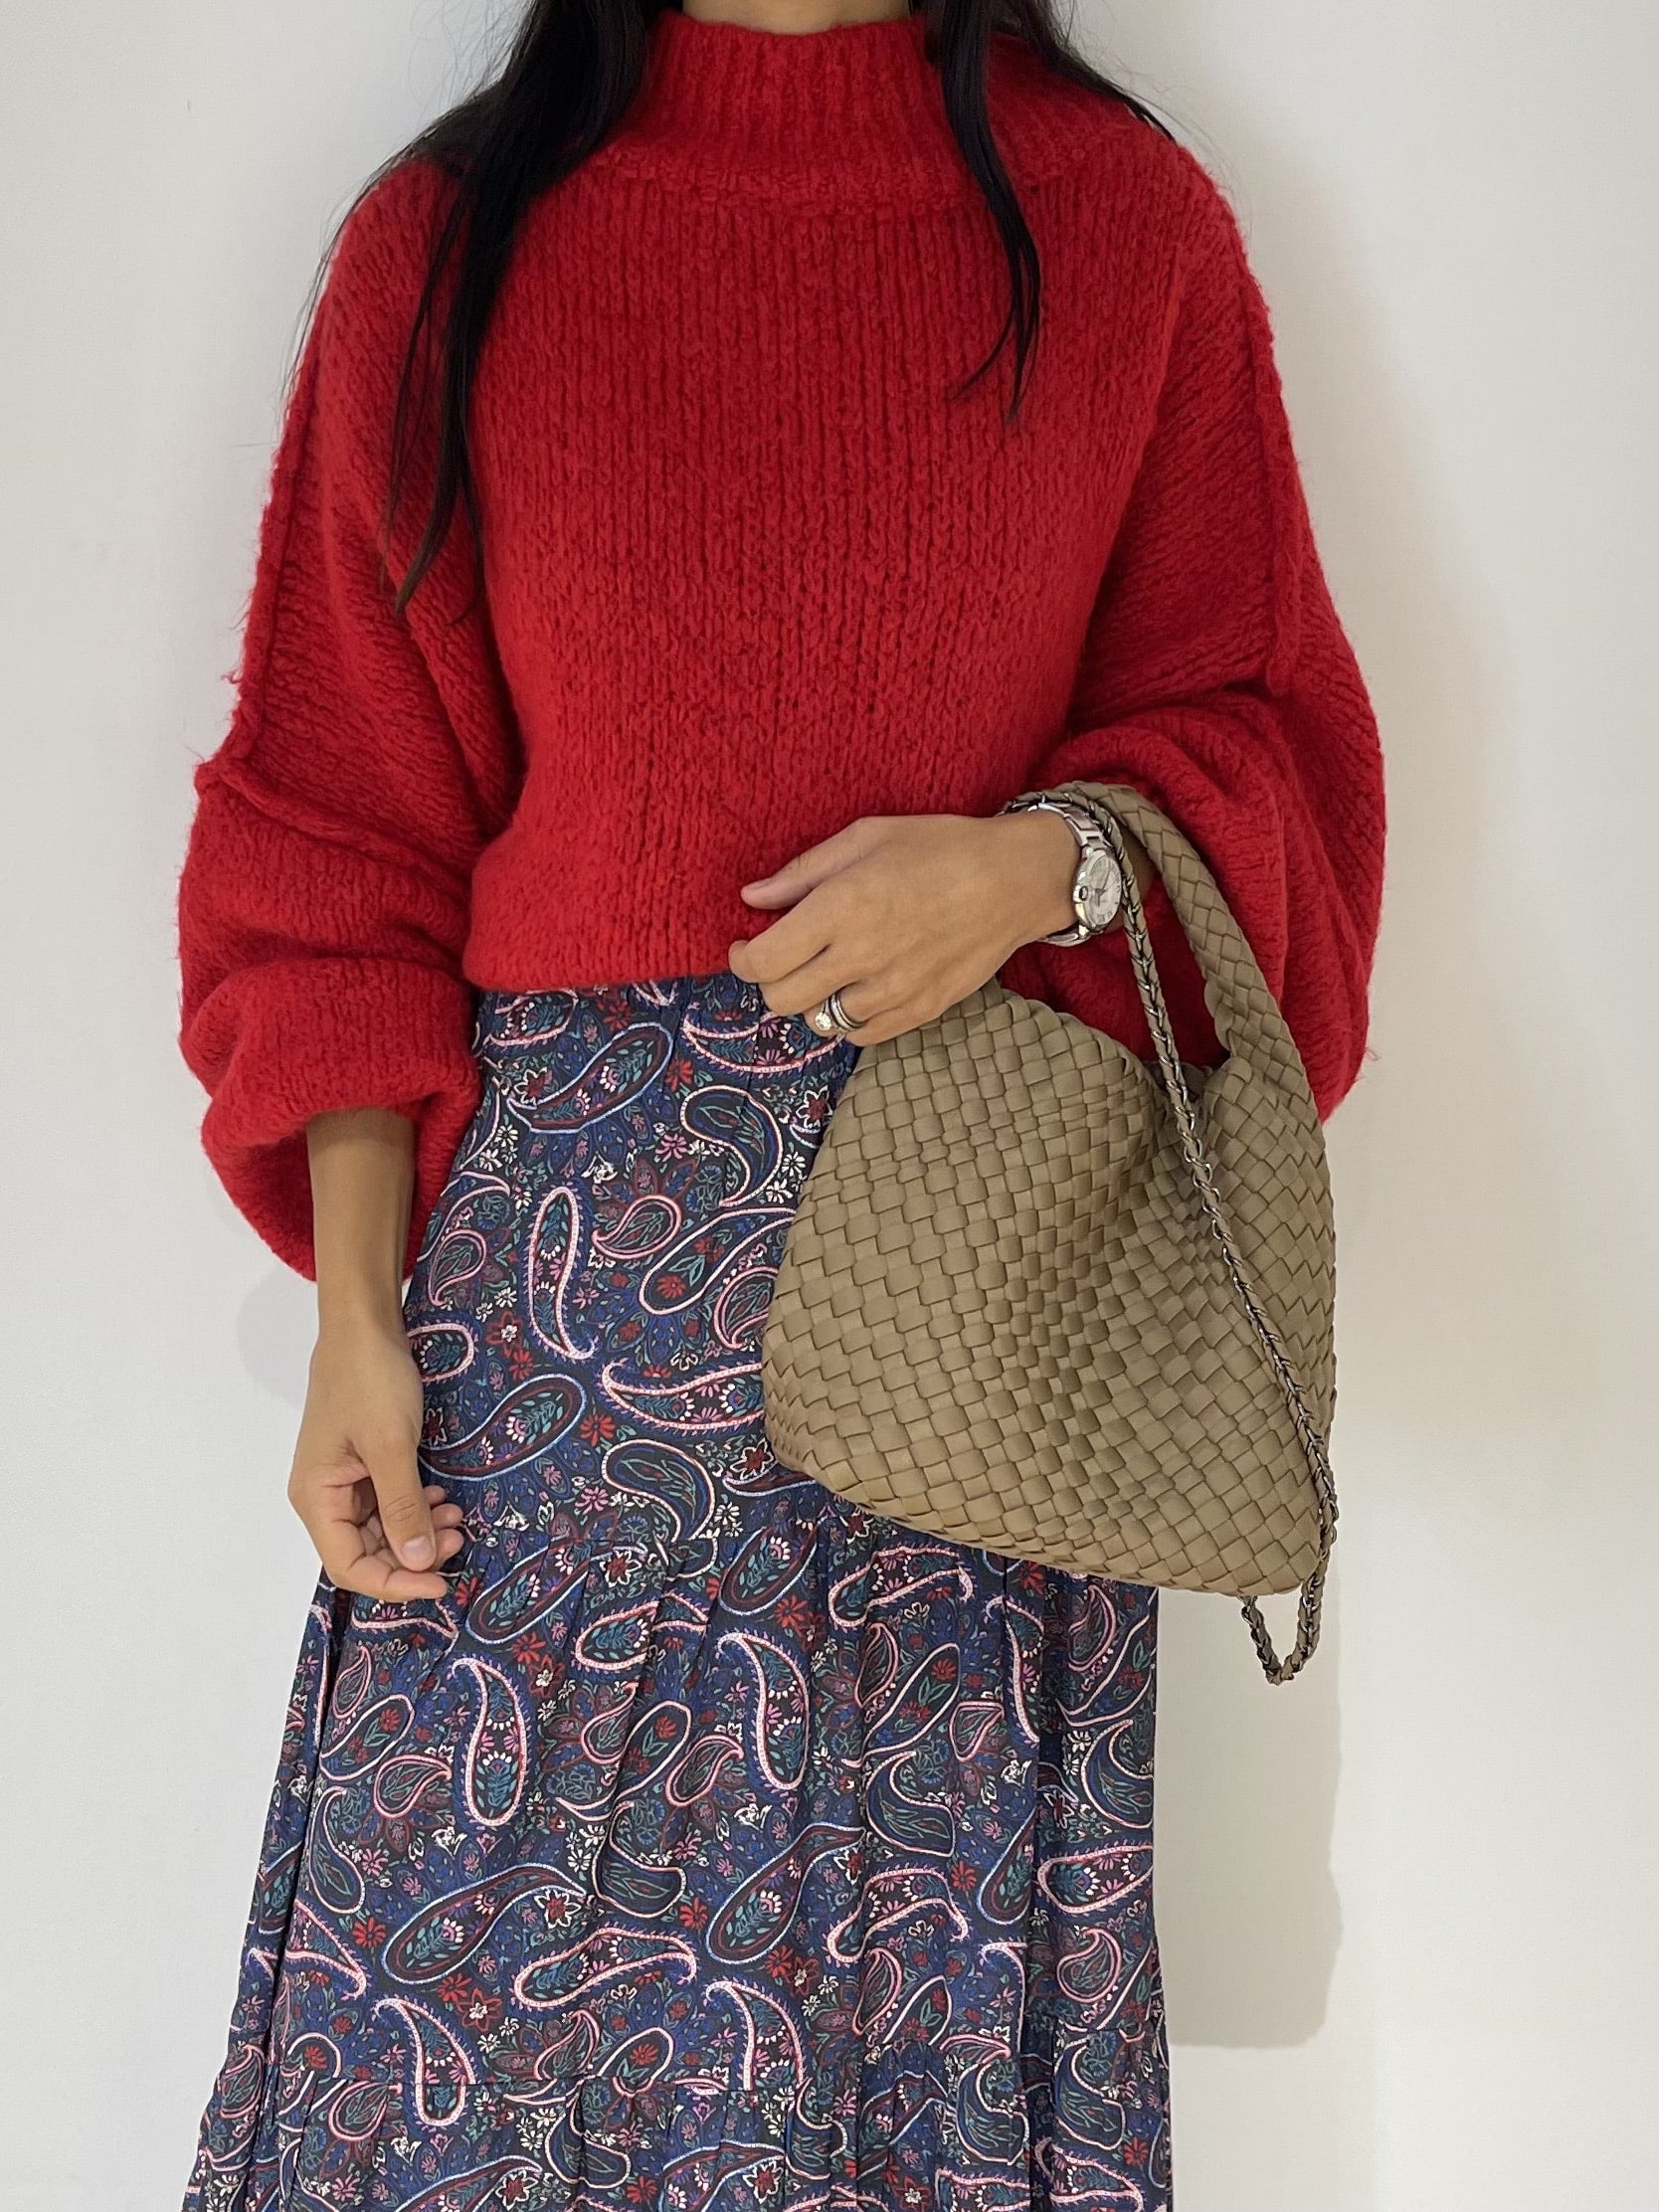 Femme tendance avec pull oversize rouge en laine et jupe imprimée